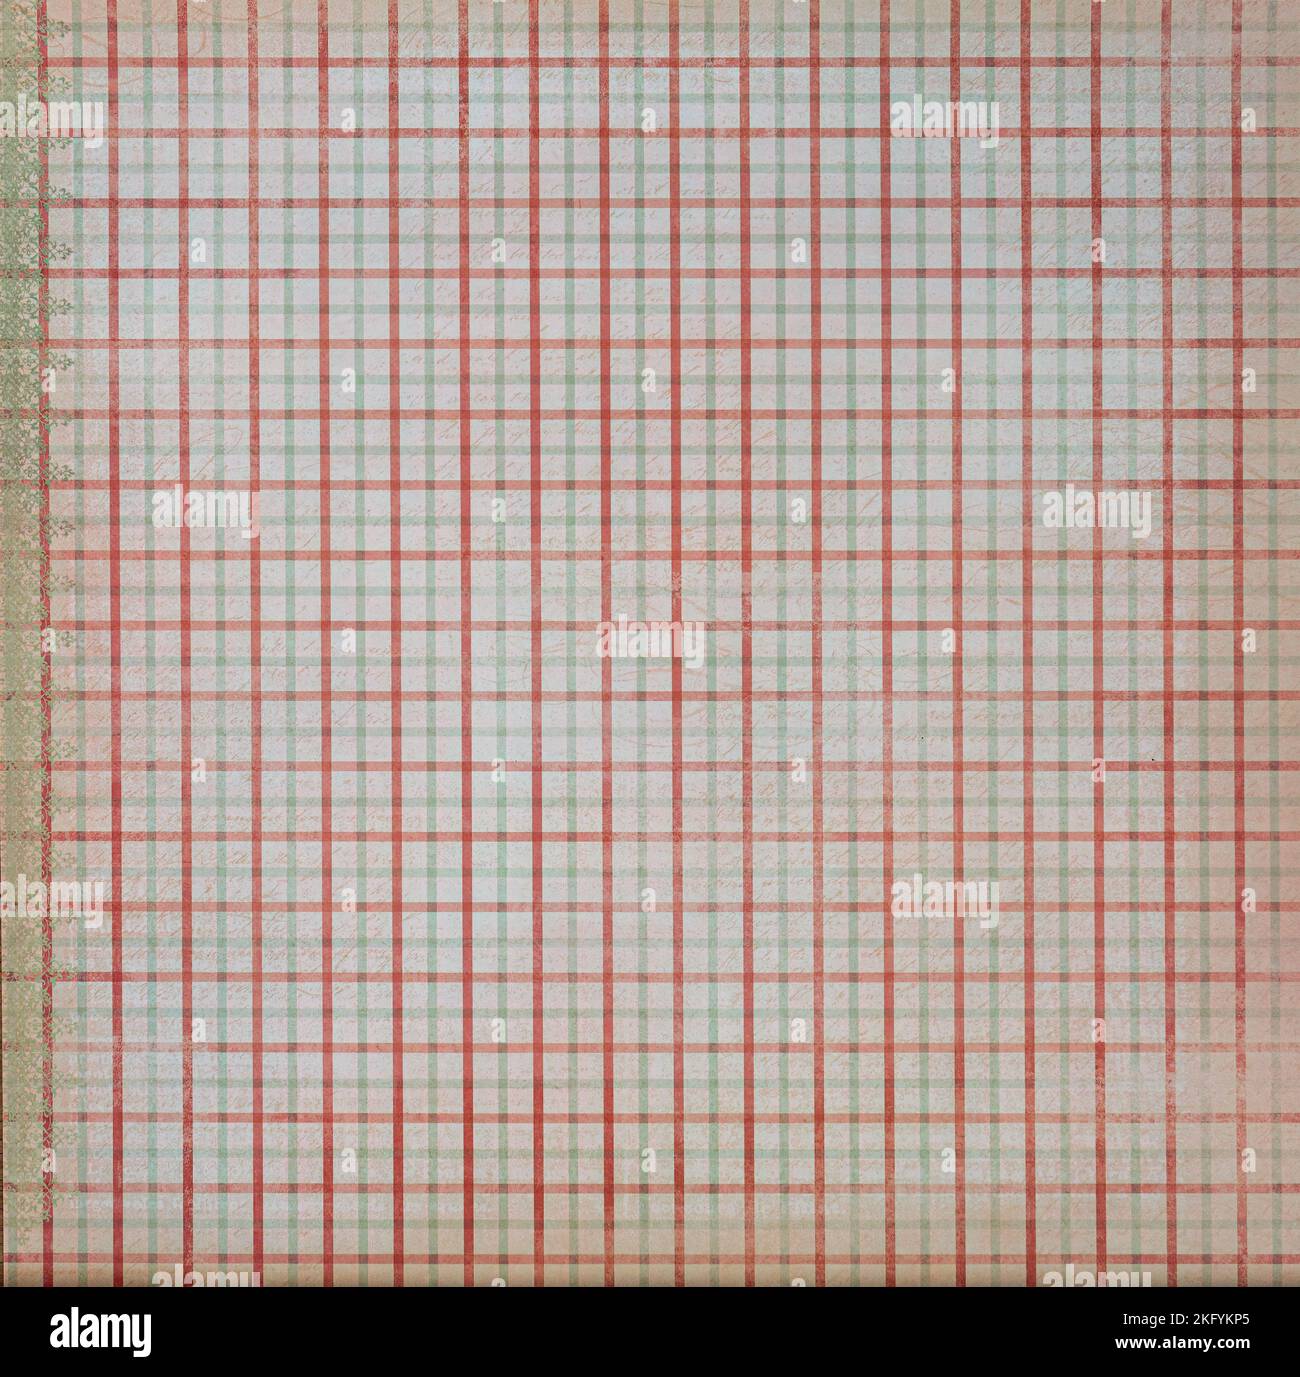 Linee rosse e verdi che compongono l'illustrazione di fondo dei lotti dei quadrati Foto Stock